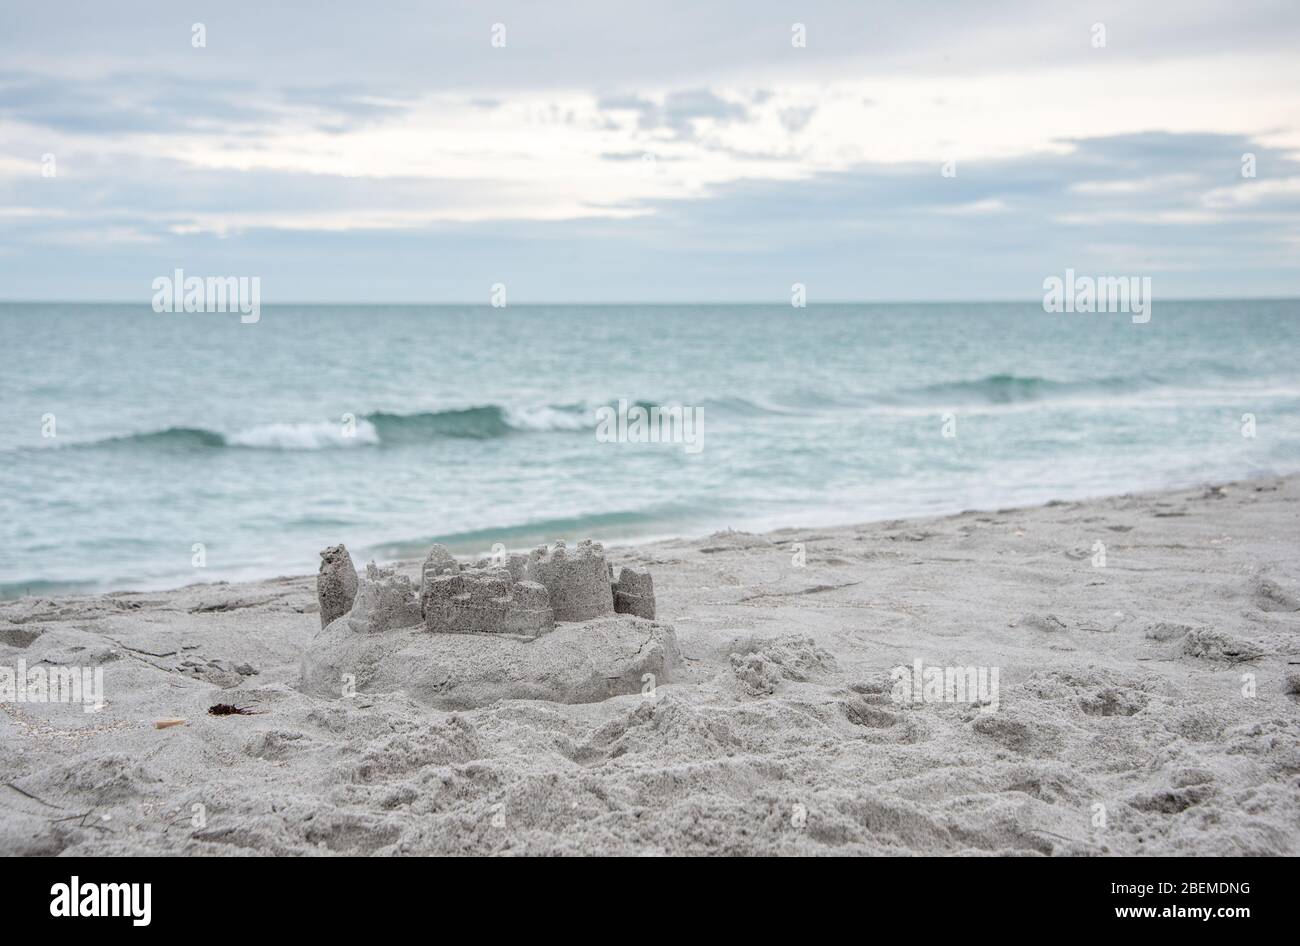 Ein Sandschloss am Strand mit sanften Wellen, eine ruhige Szene für einen Florida Familienurlaub / Urlaub in der Natur. Stockfoto